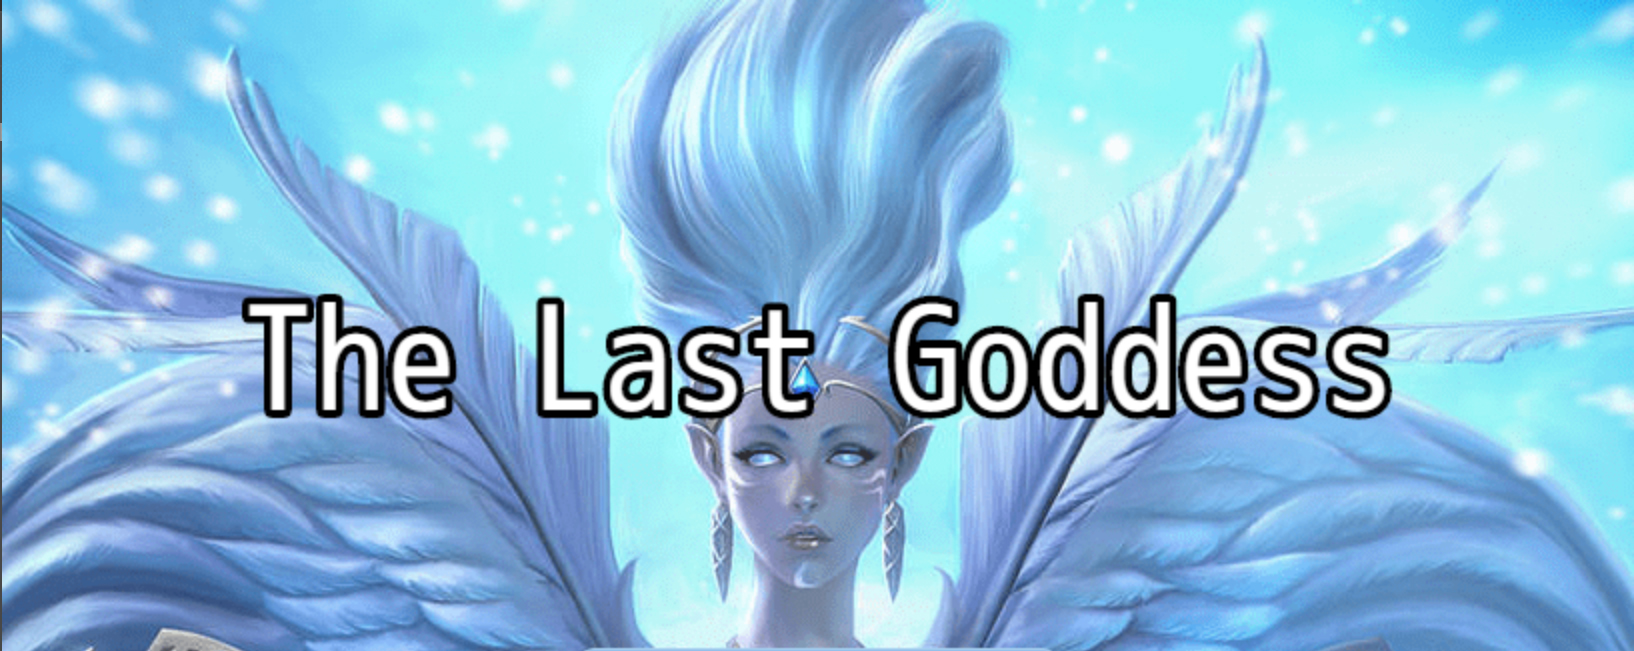 The Last Goddess poster